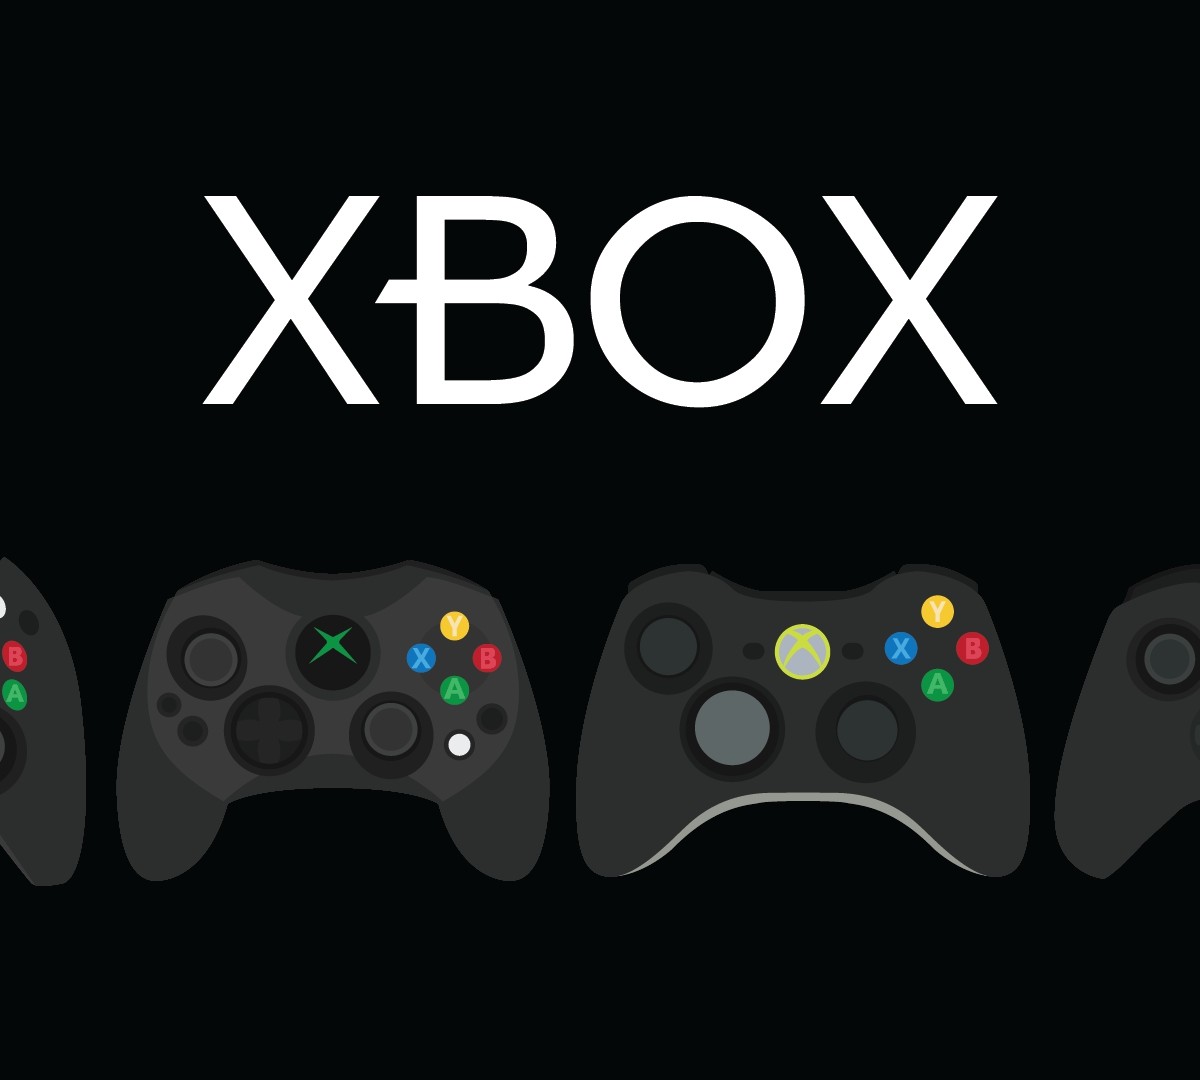 Dias de jogo grátis: experimente estes jogos Xbox de graça (3 a 6 de junho)  - Windows Club